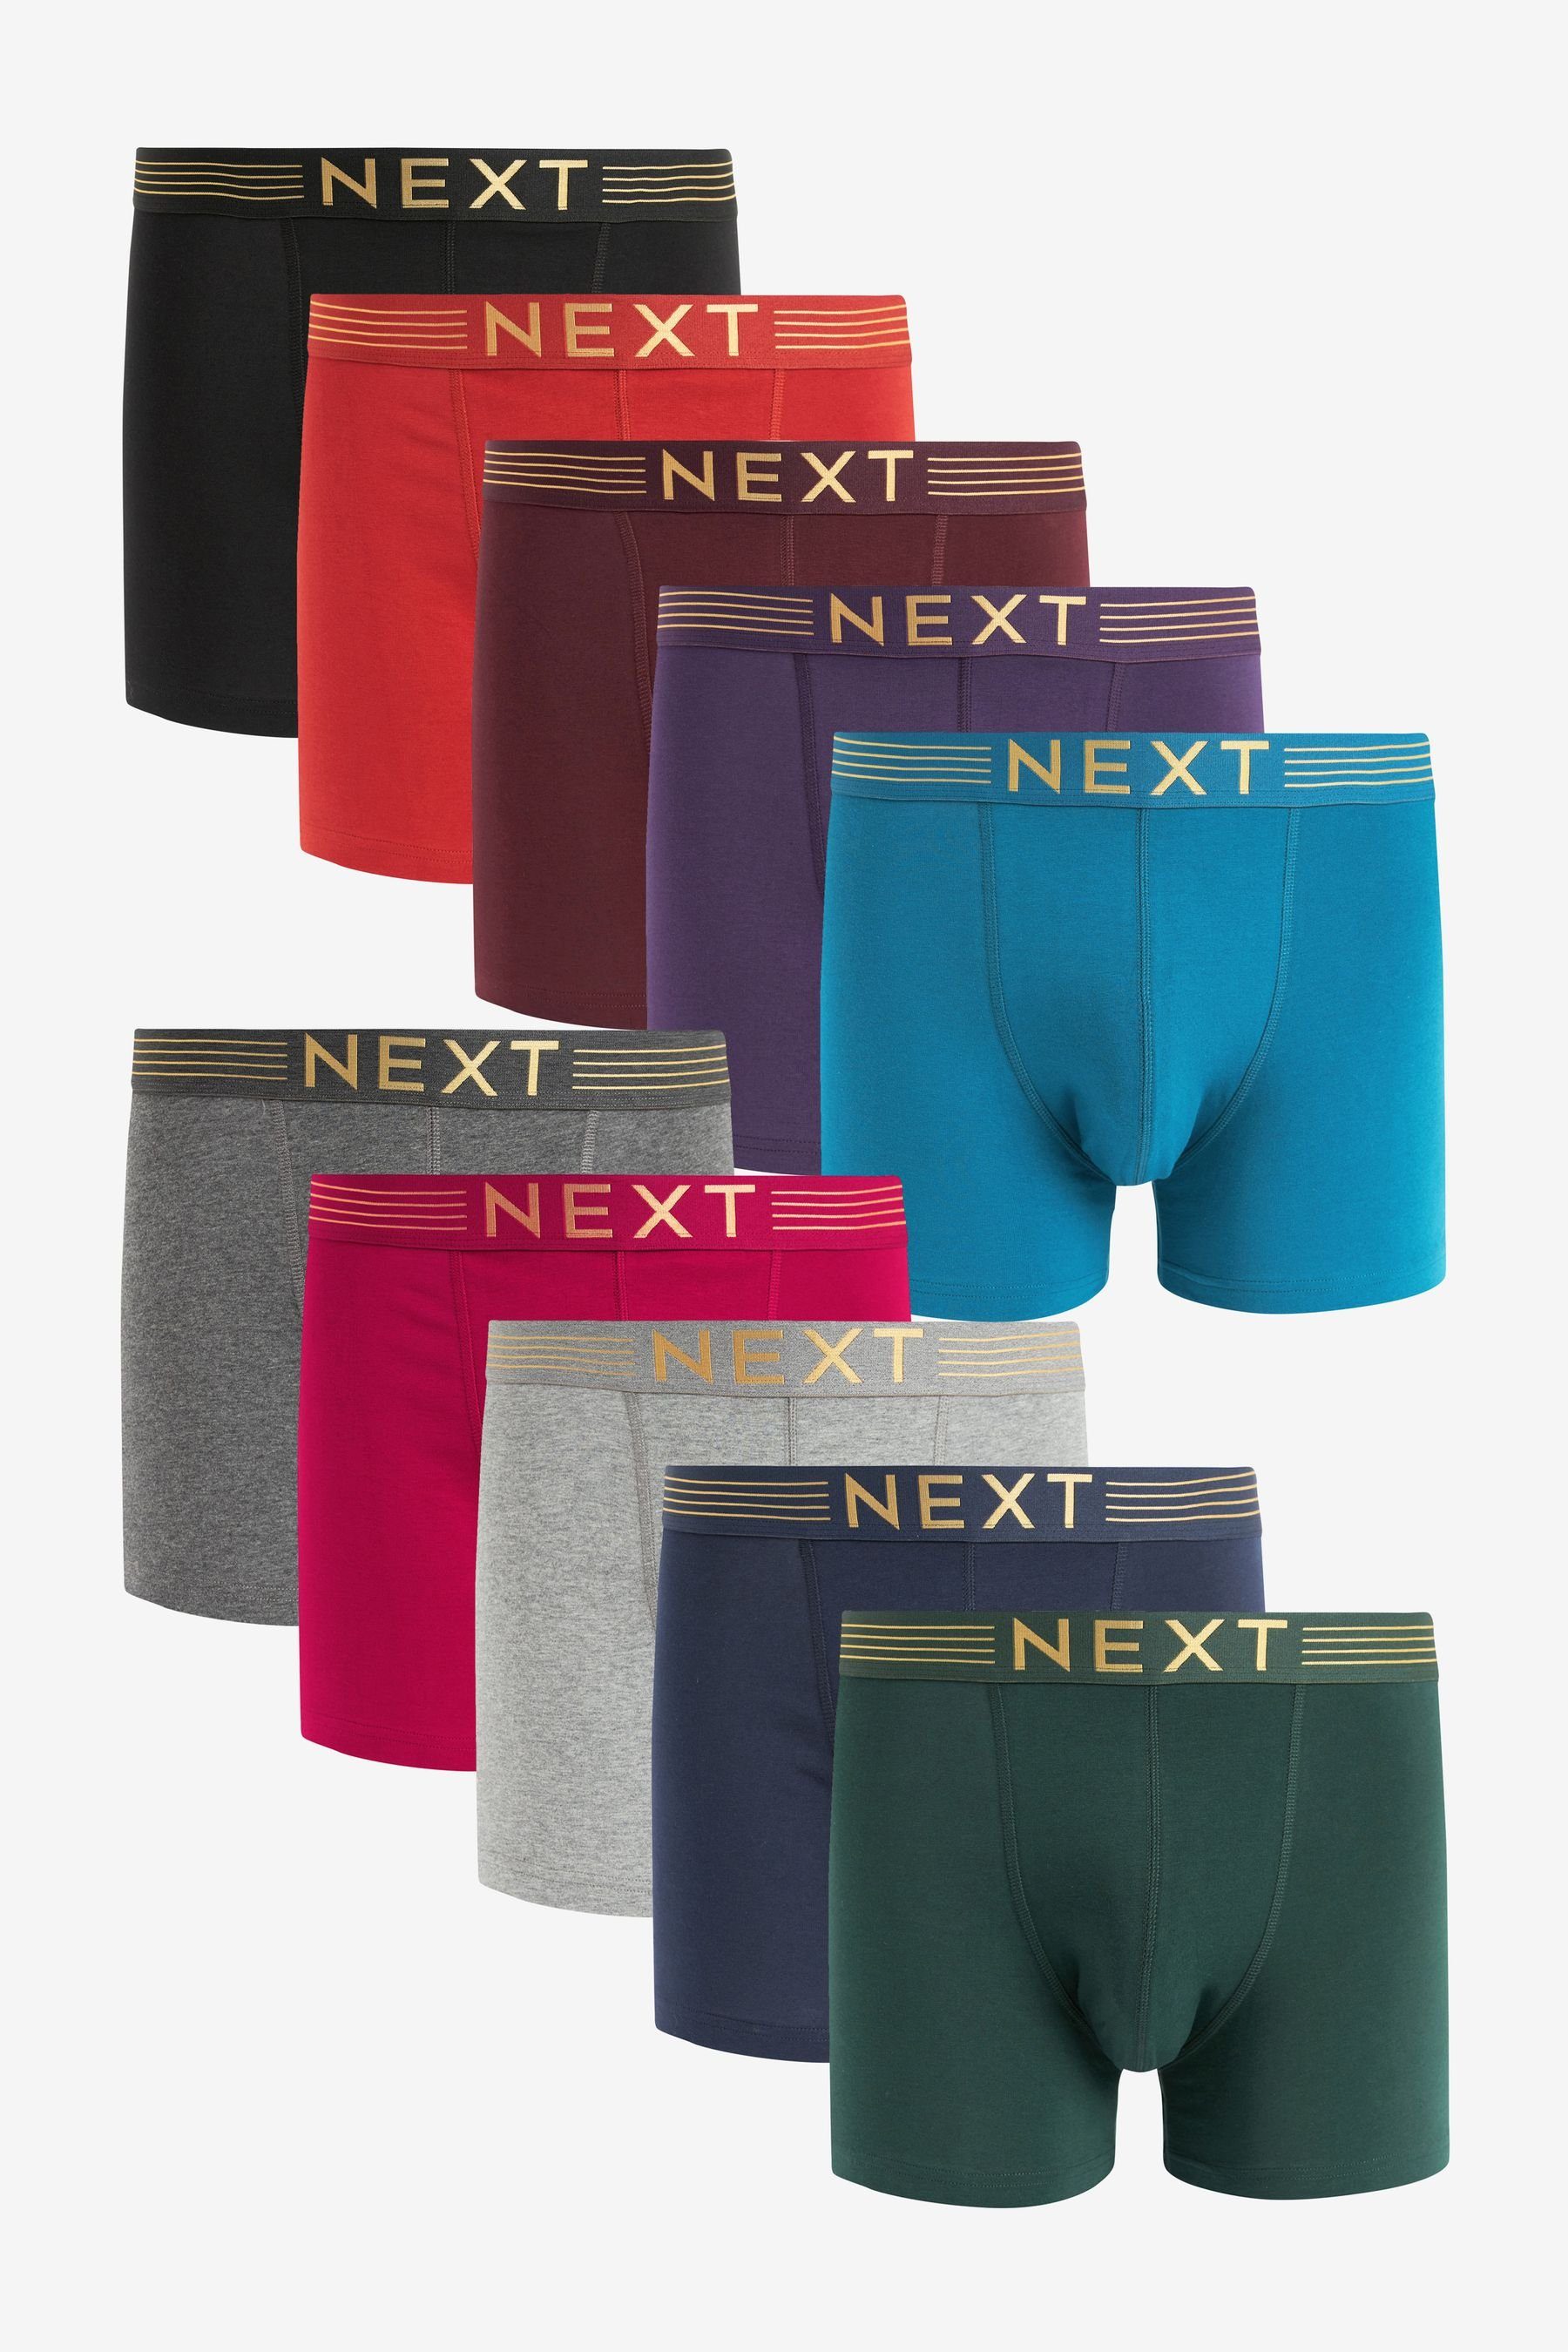 Next Hipster Unterhose, 10er-Pack Colour (10-St) Rich